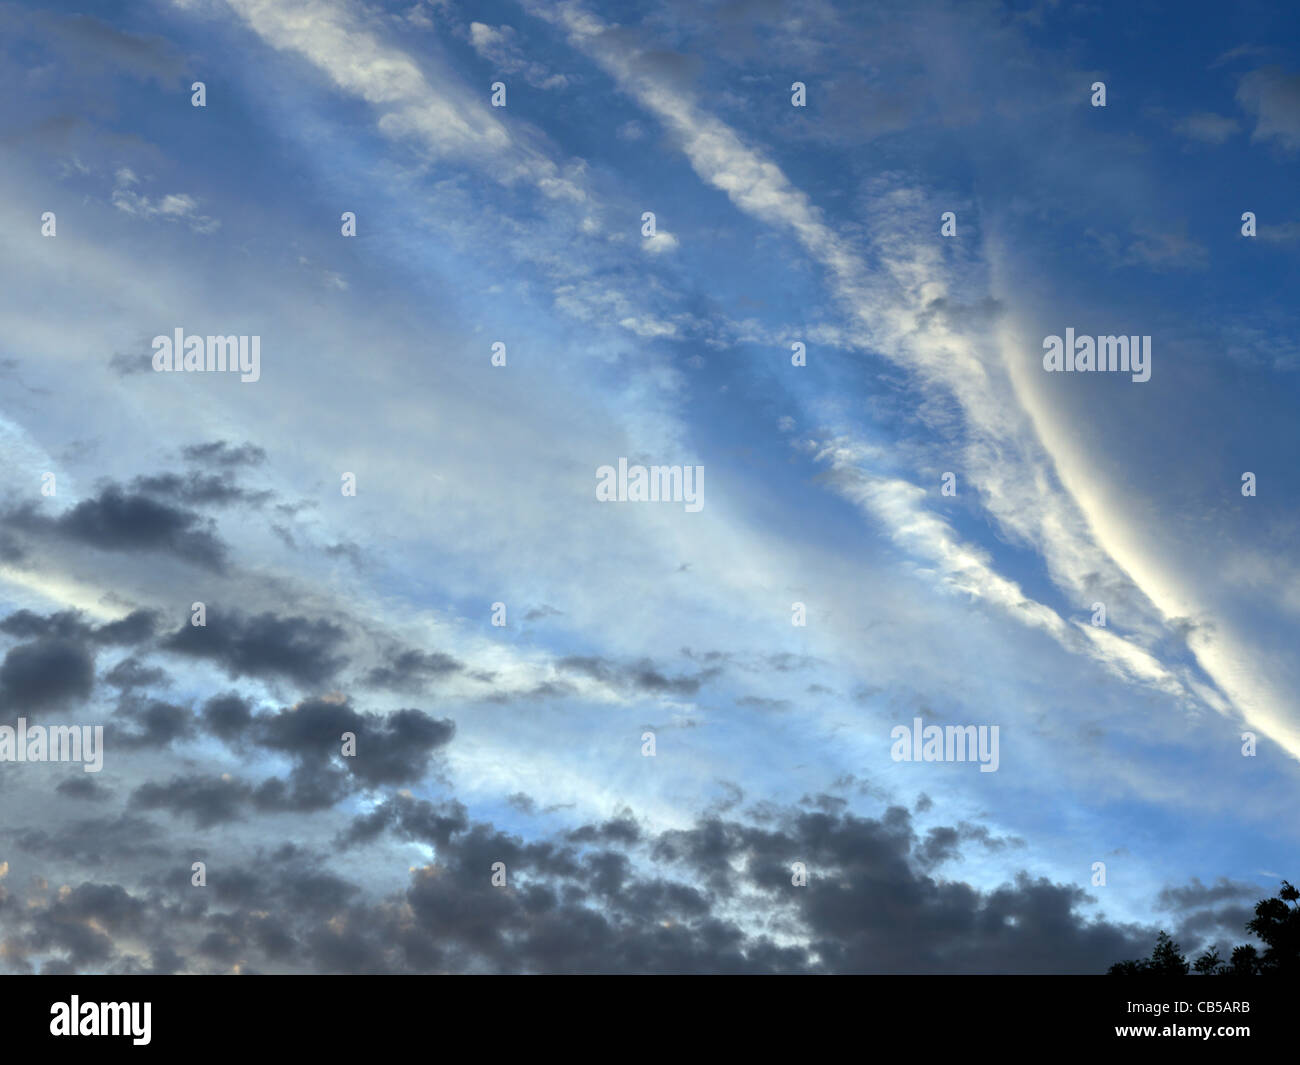 Vordere Zirruswolken und Stratocumulus Wolken England Wetter Stockfoto